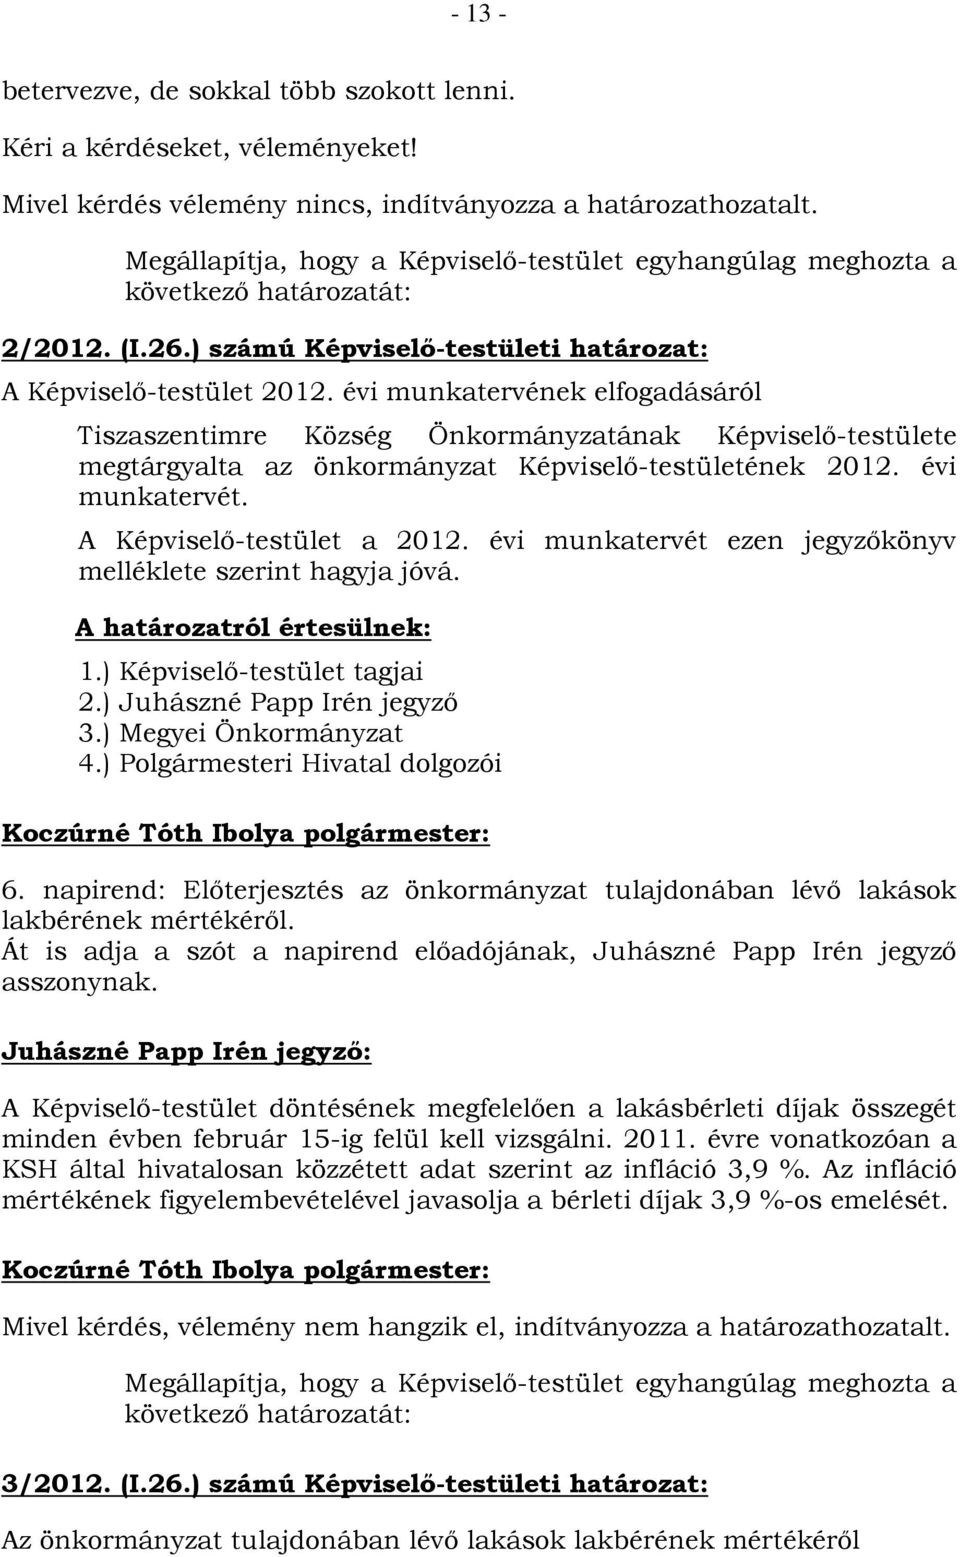 évi munkatervének elfogadásáról Tiszaszentimre Község Önkormányzatának Képviselő-testülete megtárgyalta az önkormányzat Képviselő-testületének 2012. évi munkatervét. A Képviselő-testület a 2012.